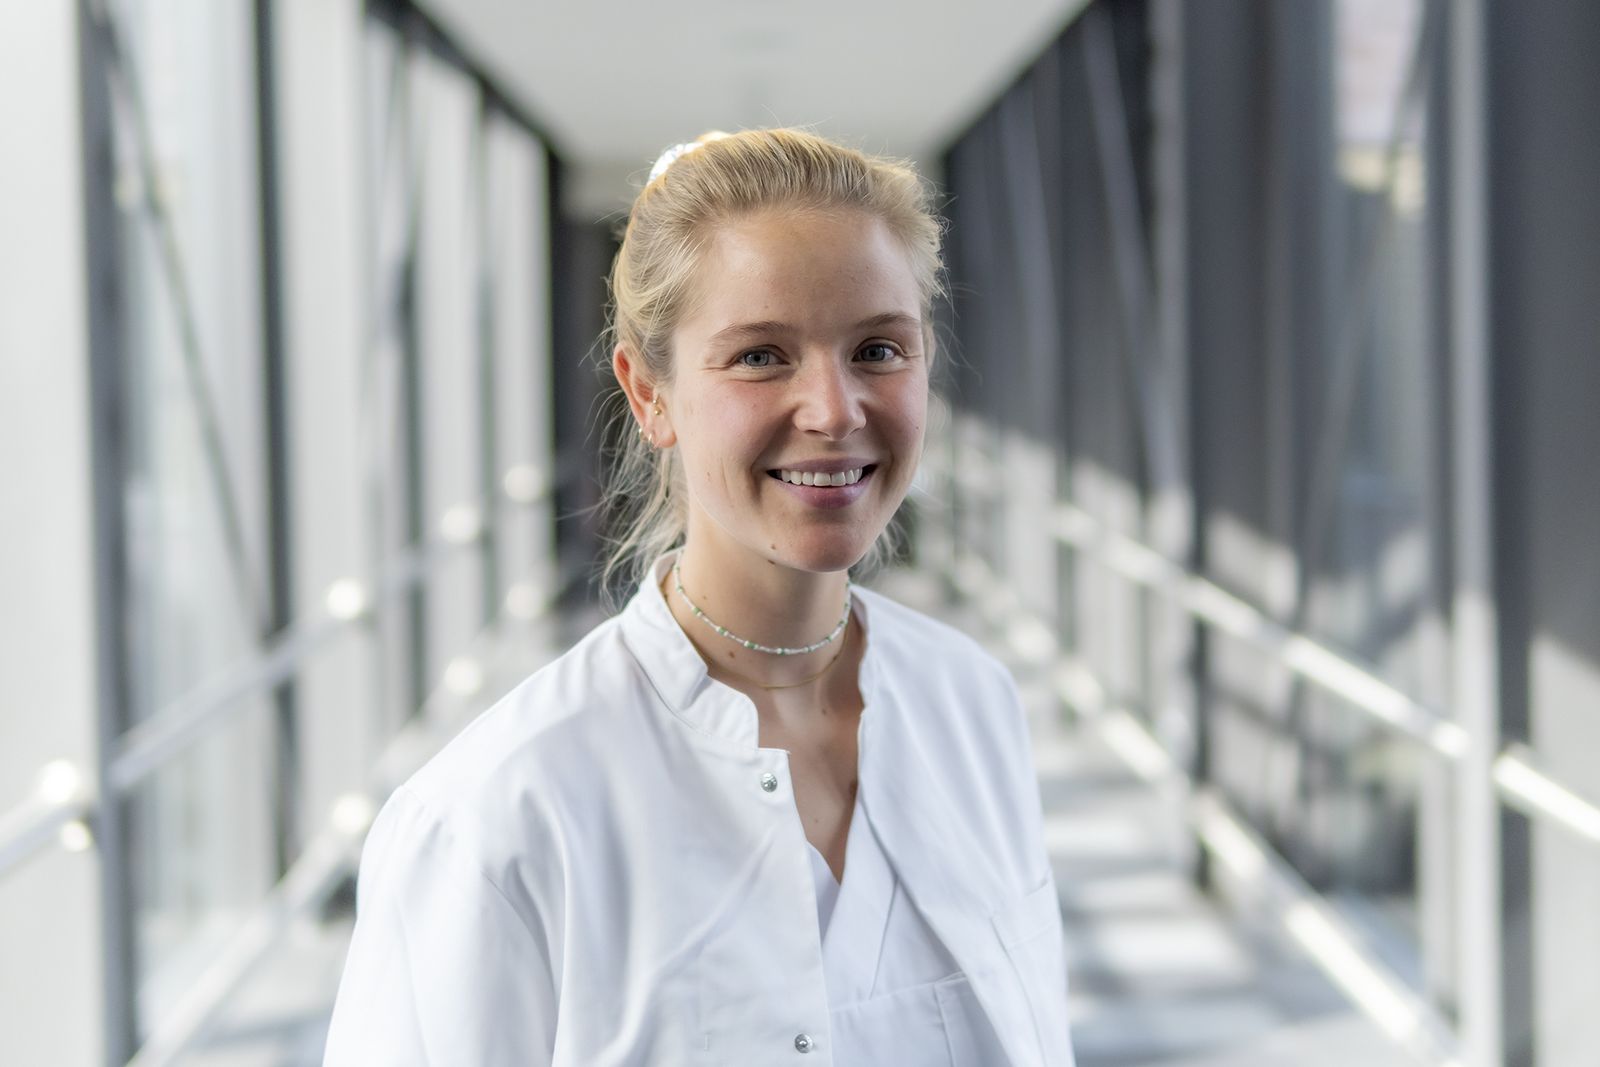 Isabel Leuchtweis, Ärztin in Weiterbildung